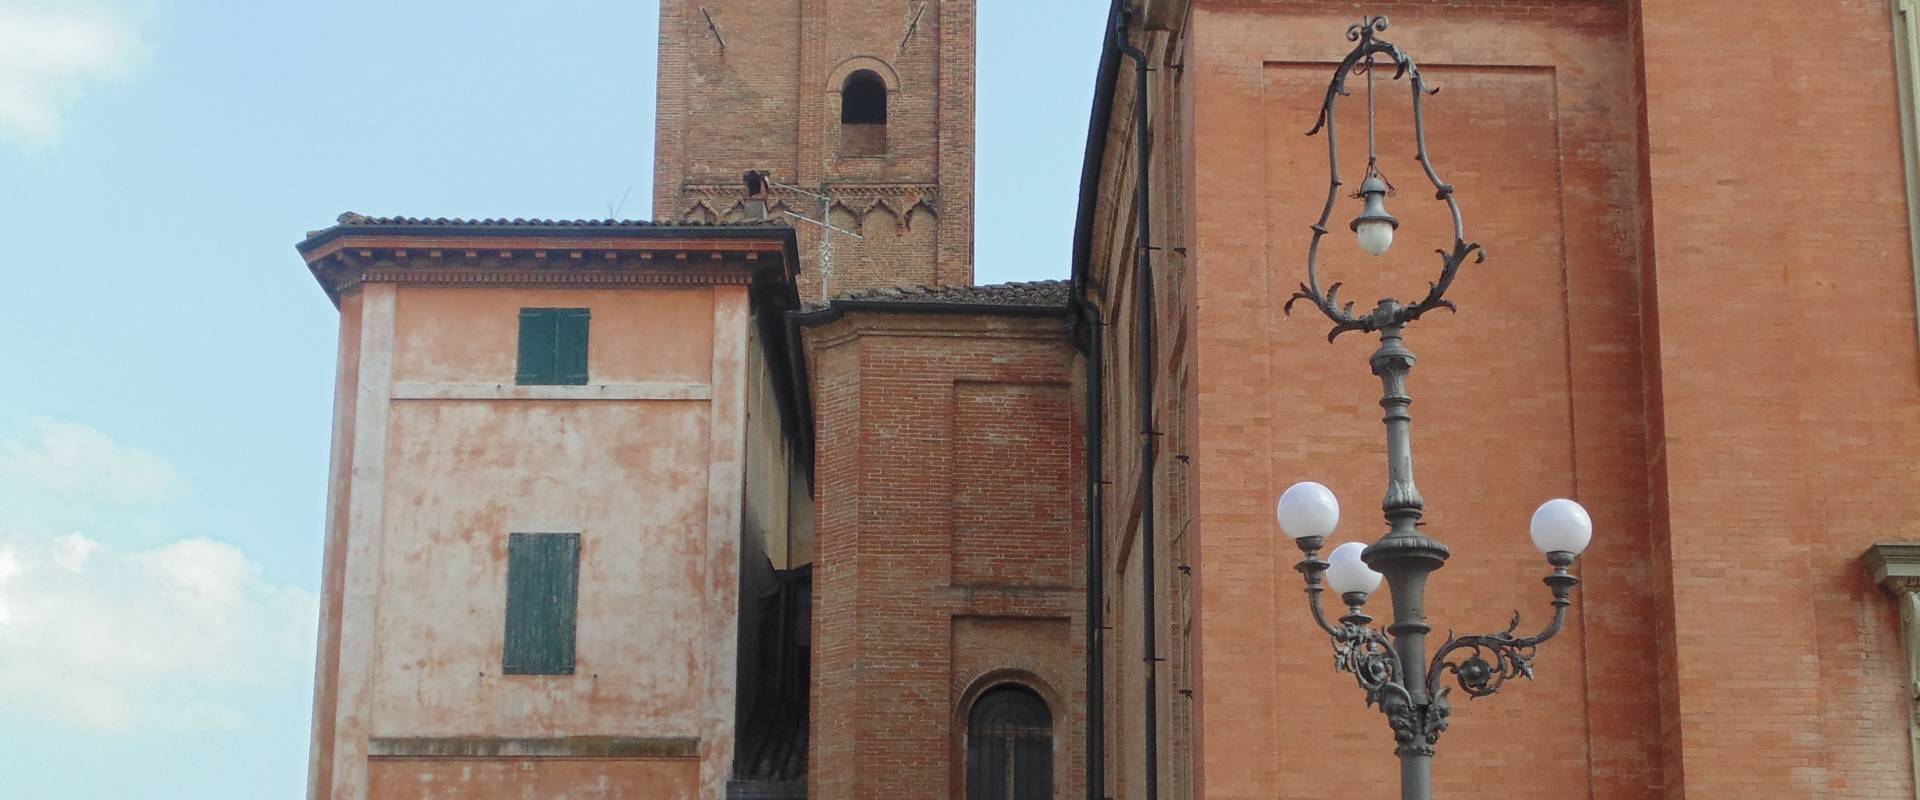 Chiesa cattedrale di San Cassiano (campanile lato) photo by Maurolattuga